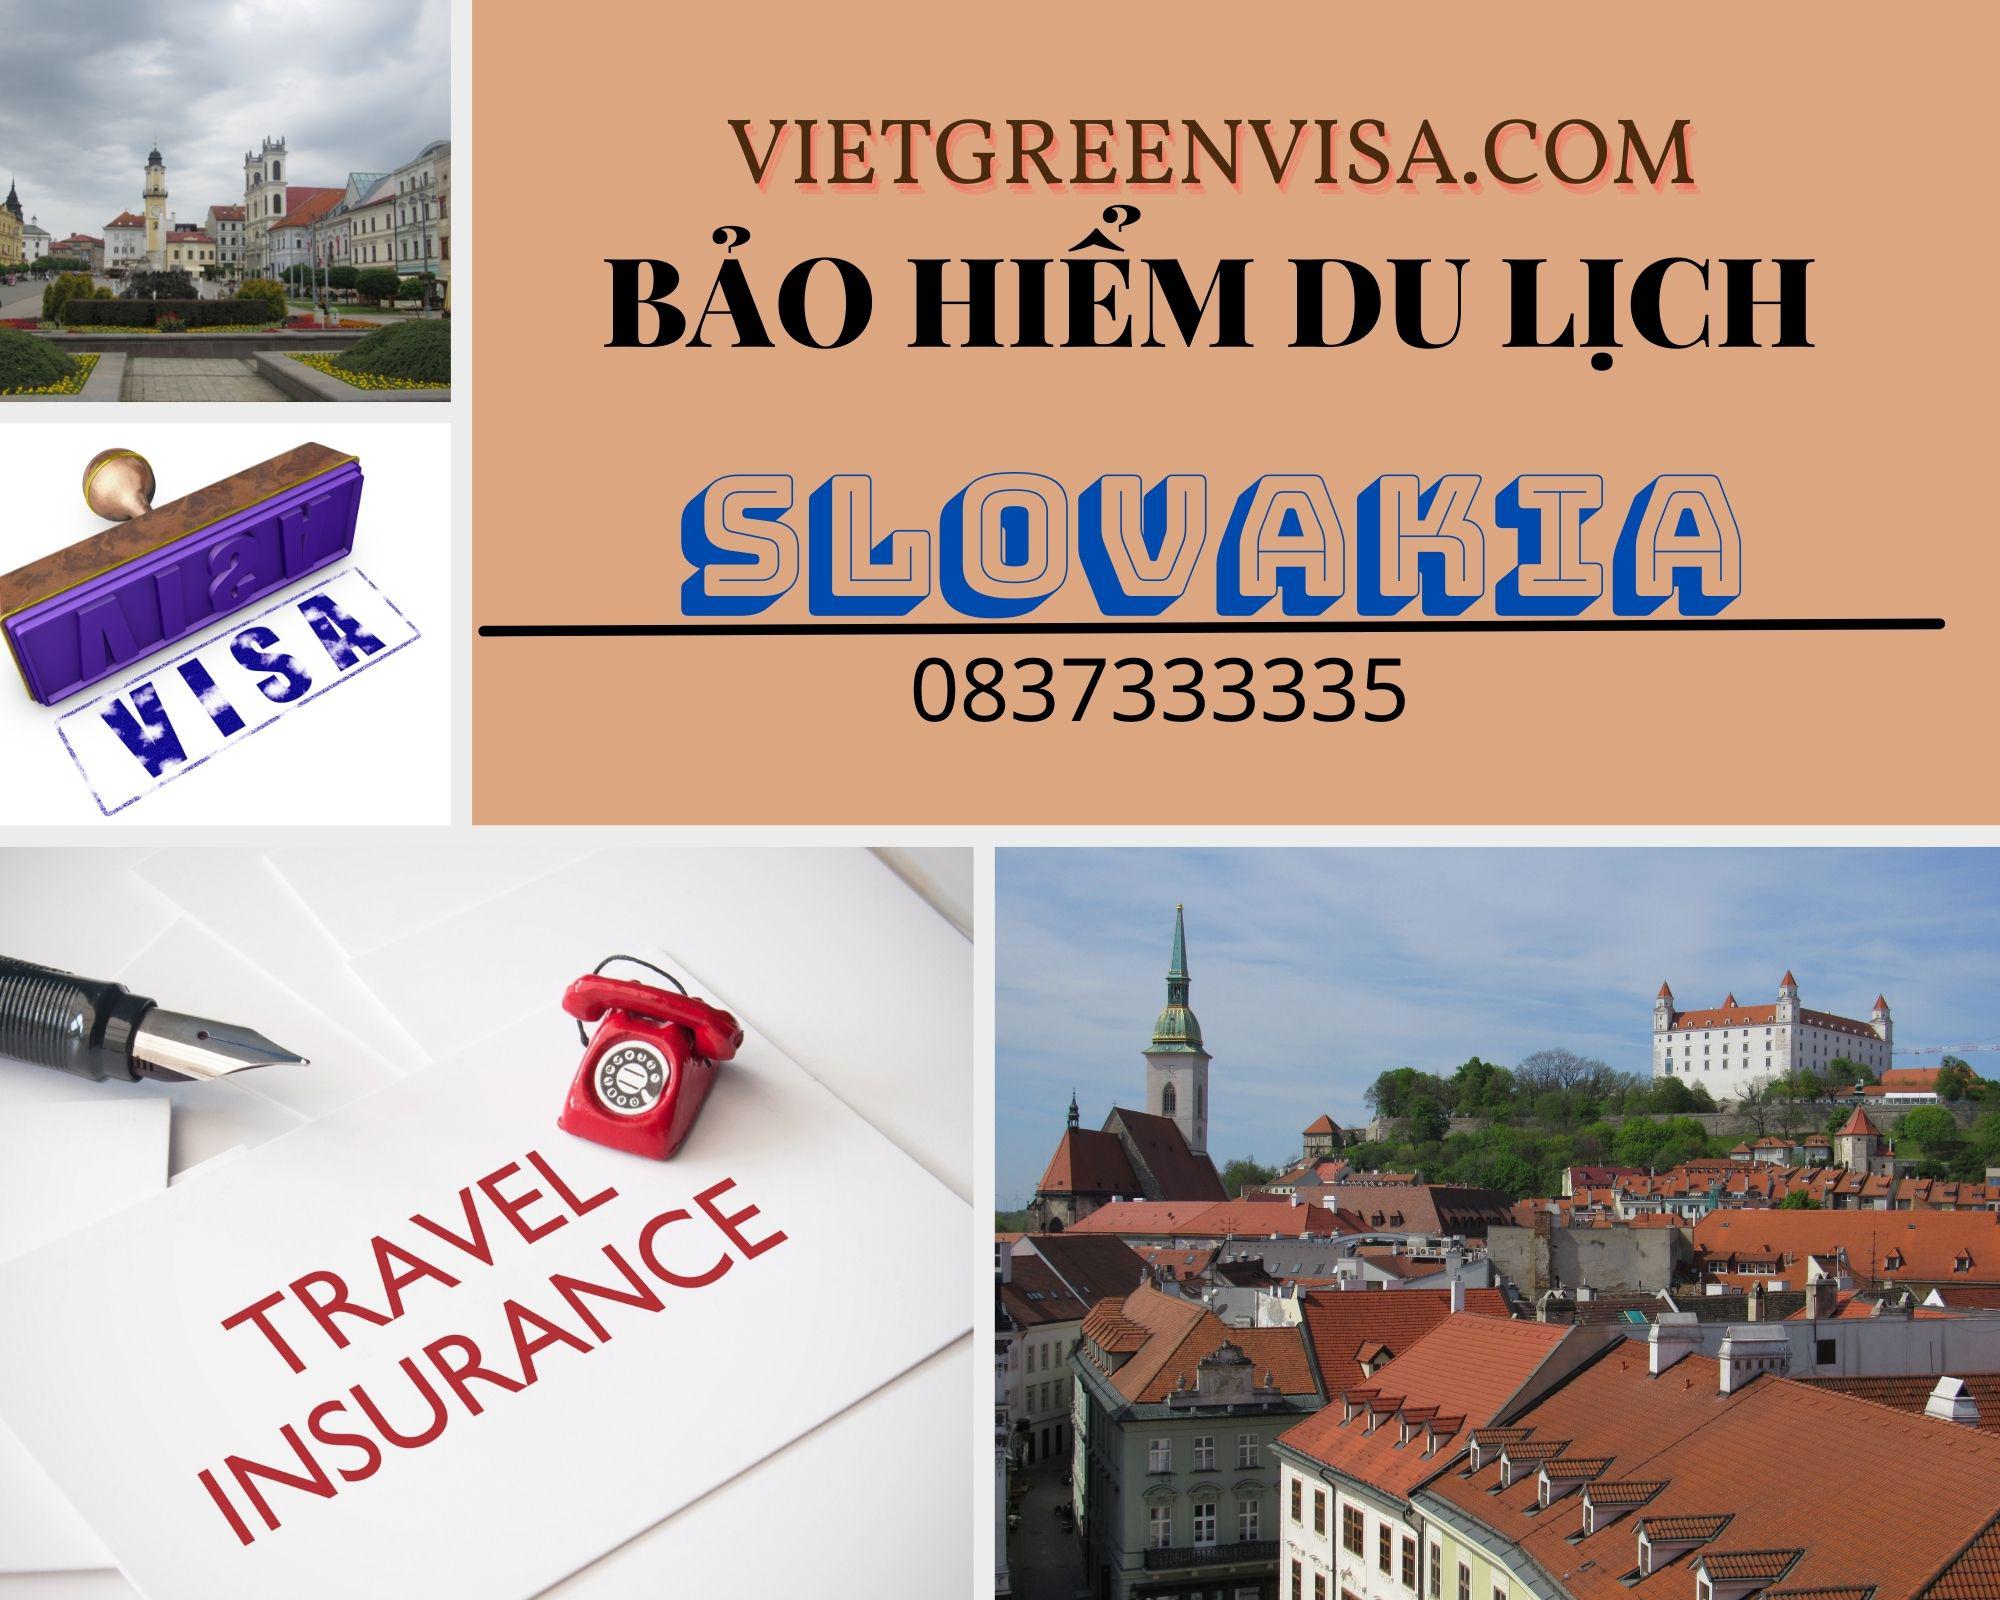 Dịch vụ bảo hiểm du lịch xin visa Slovakia giá tốt nhất